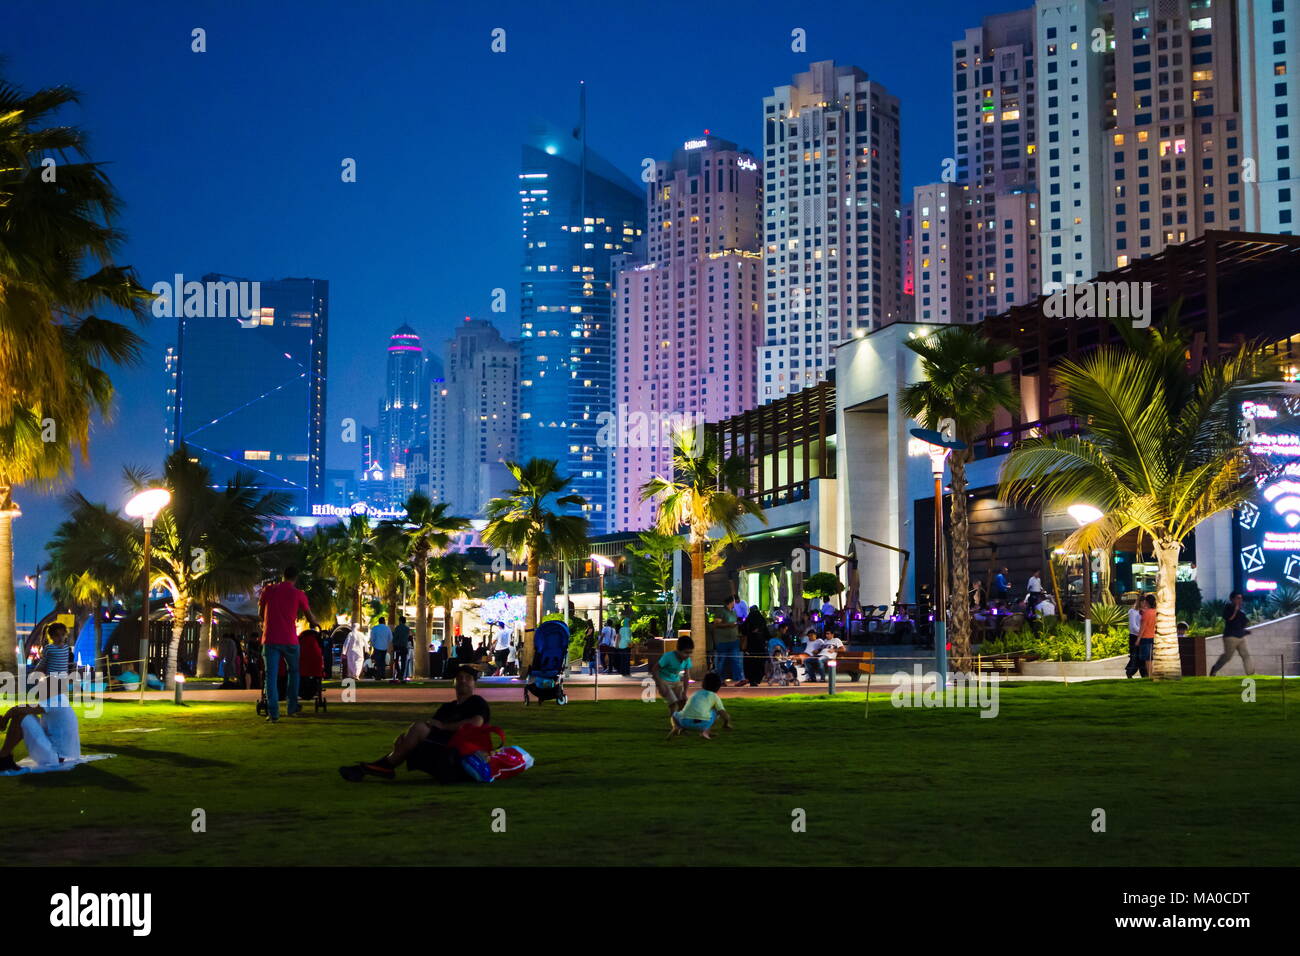 Dubai, Vereinigte Arabische Emirate - 8. März 2018: JBR, Jumeirah Beach Resort Promenade in der Nacht, eine neue touristische Attraktion und Wohngebiet in Dubai, Un Stockfoto